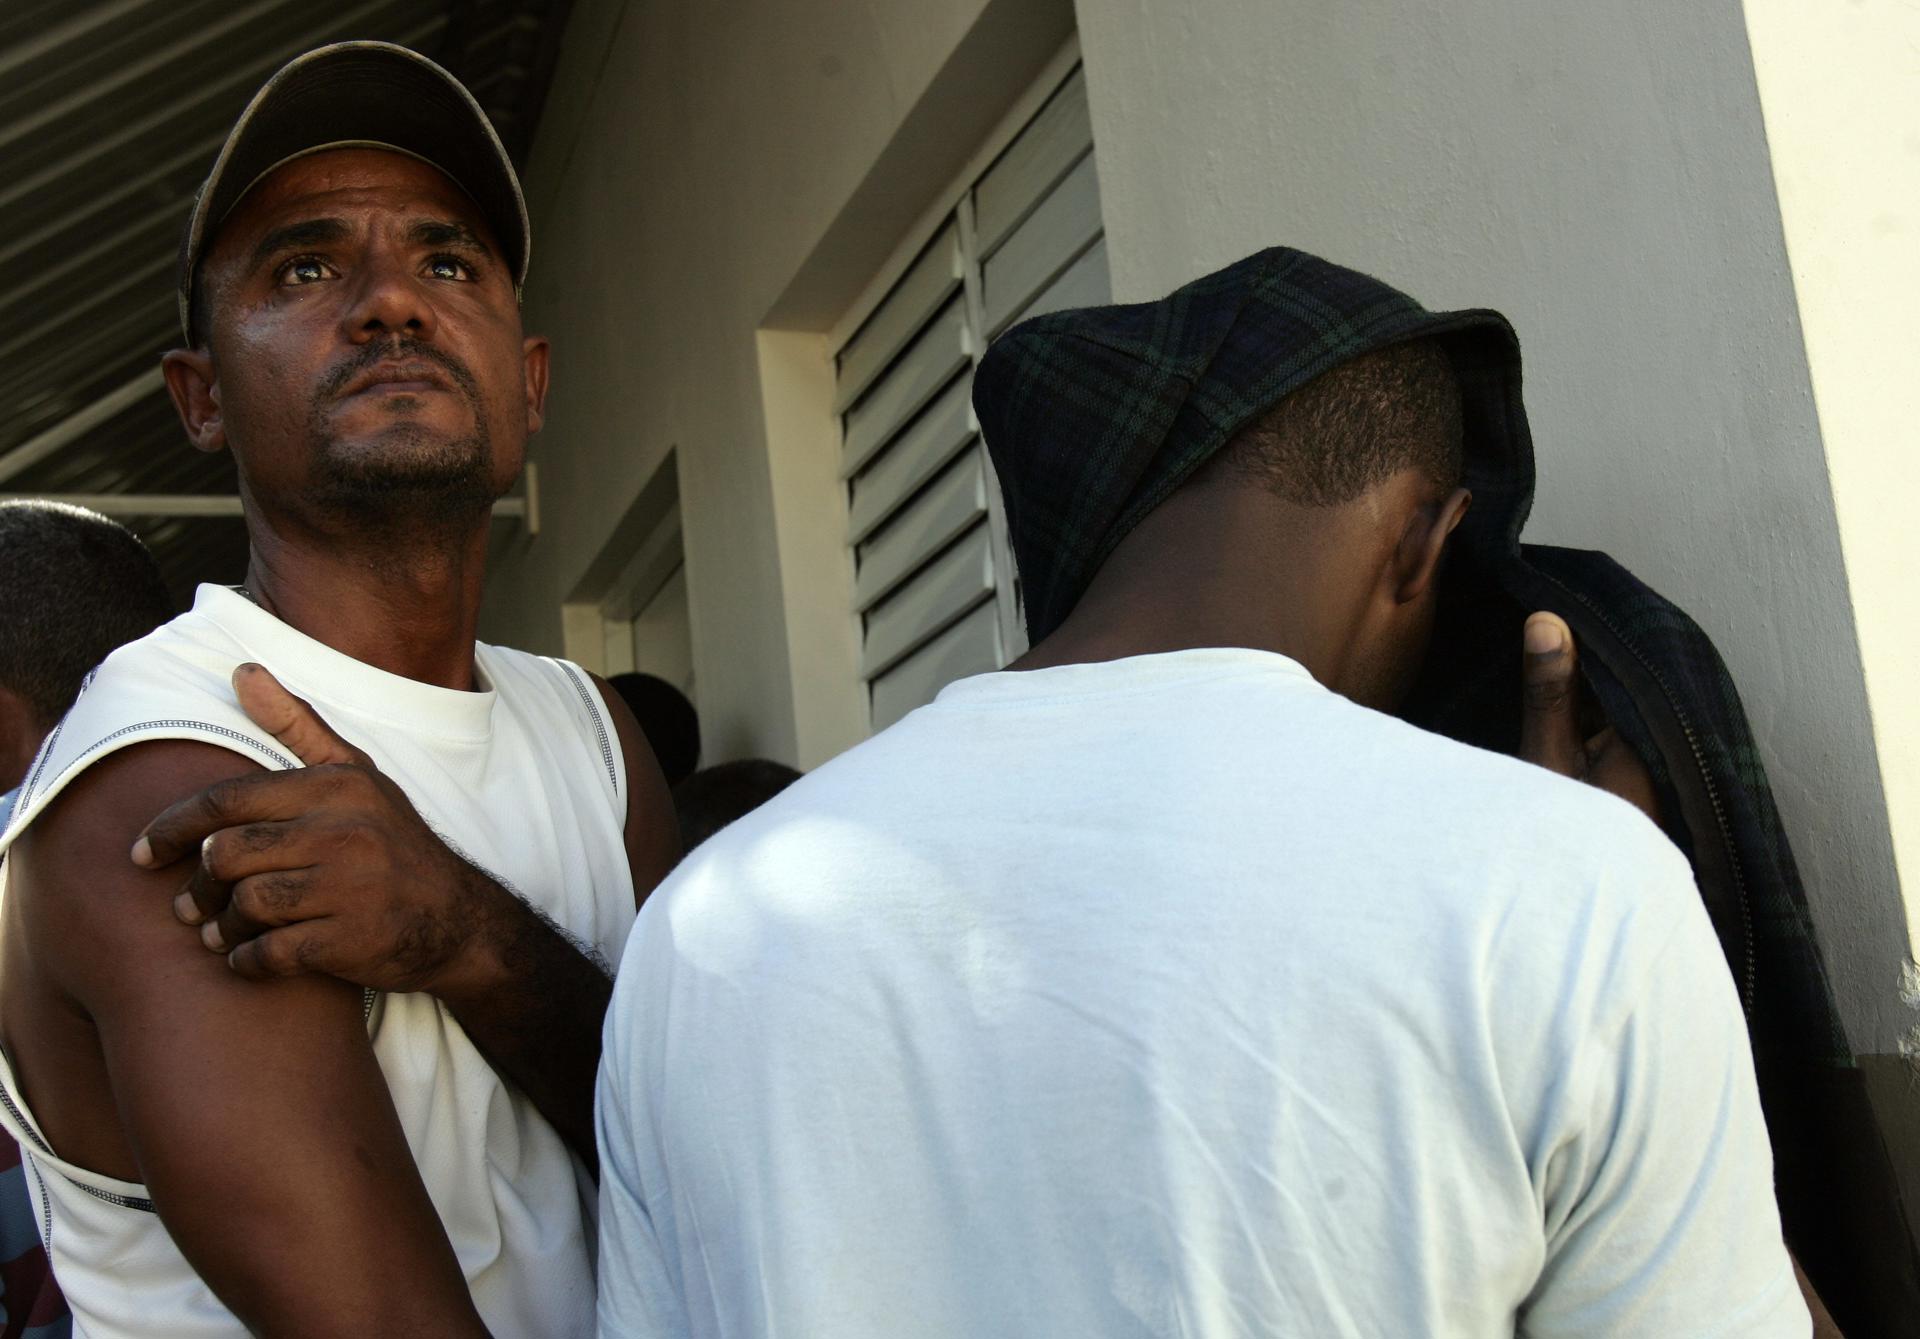 El grupo de migrantes fue capturado a las 12:18 (16:18 GMT) -hora local- de este jueves en el sector de Villa Pesquera, en Isabela, indicó la fuente en un comunicado de prensa. Imagen de archivo. EFE/Orlando Barría